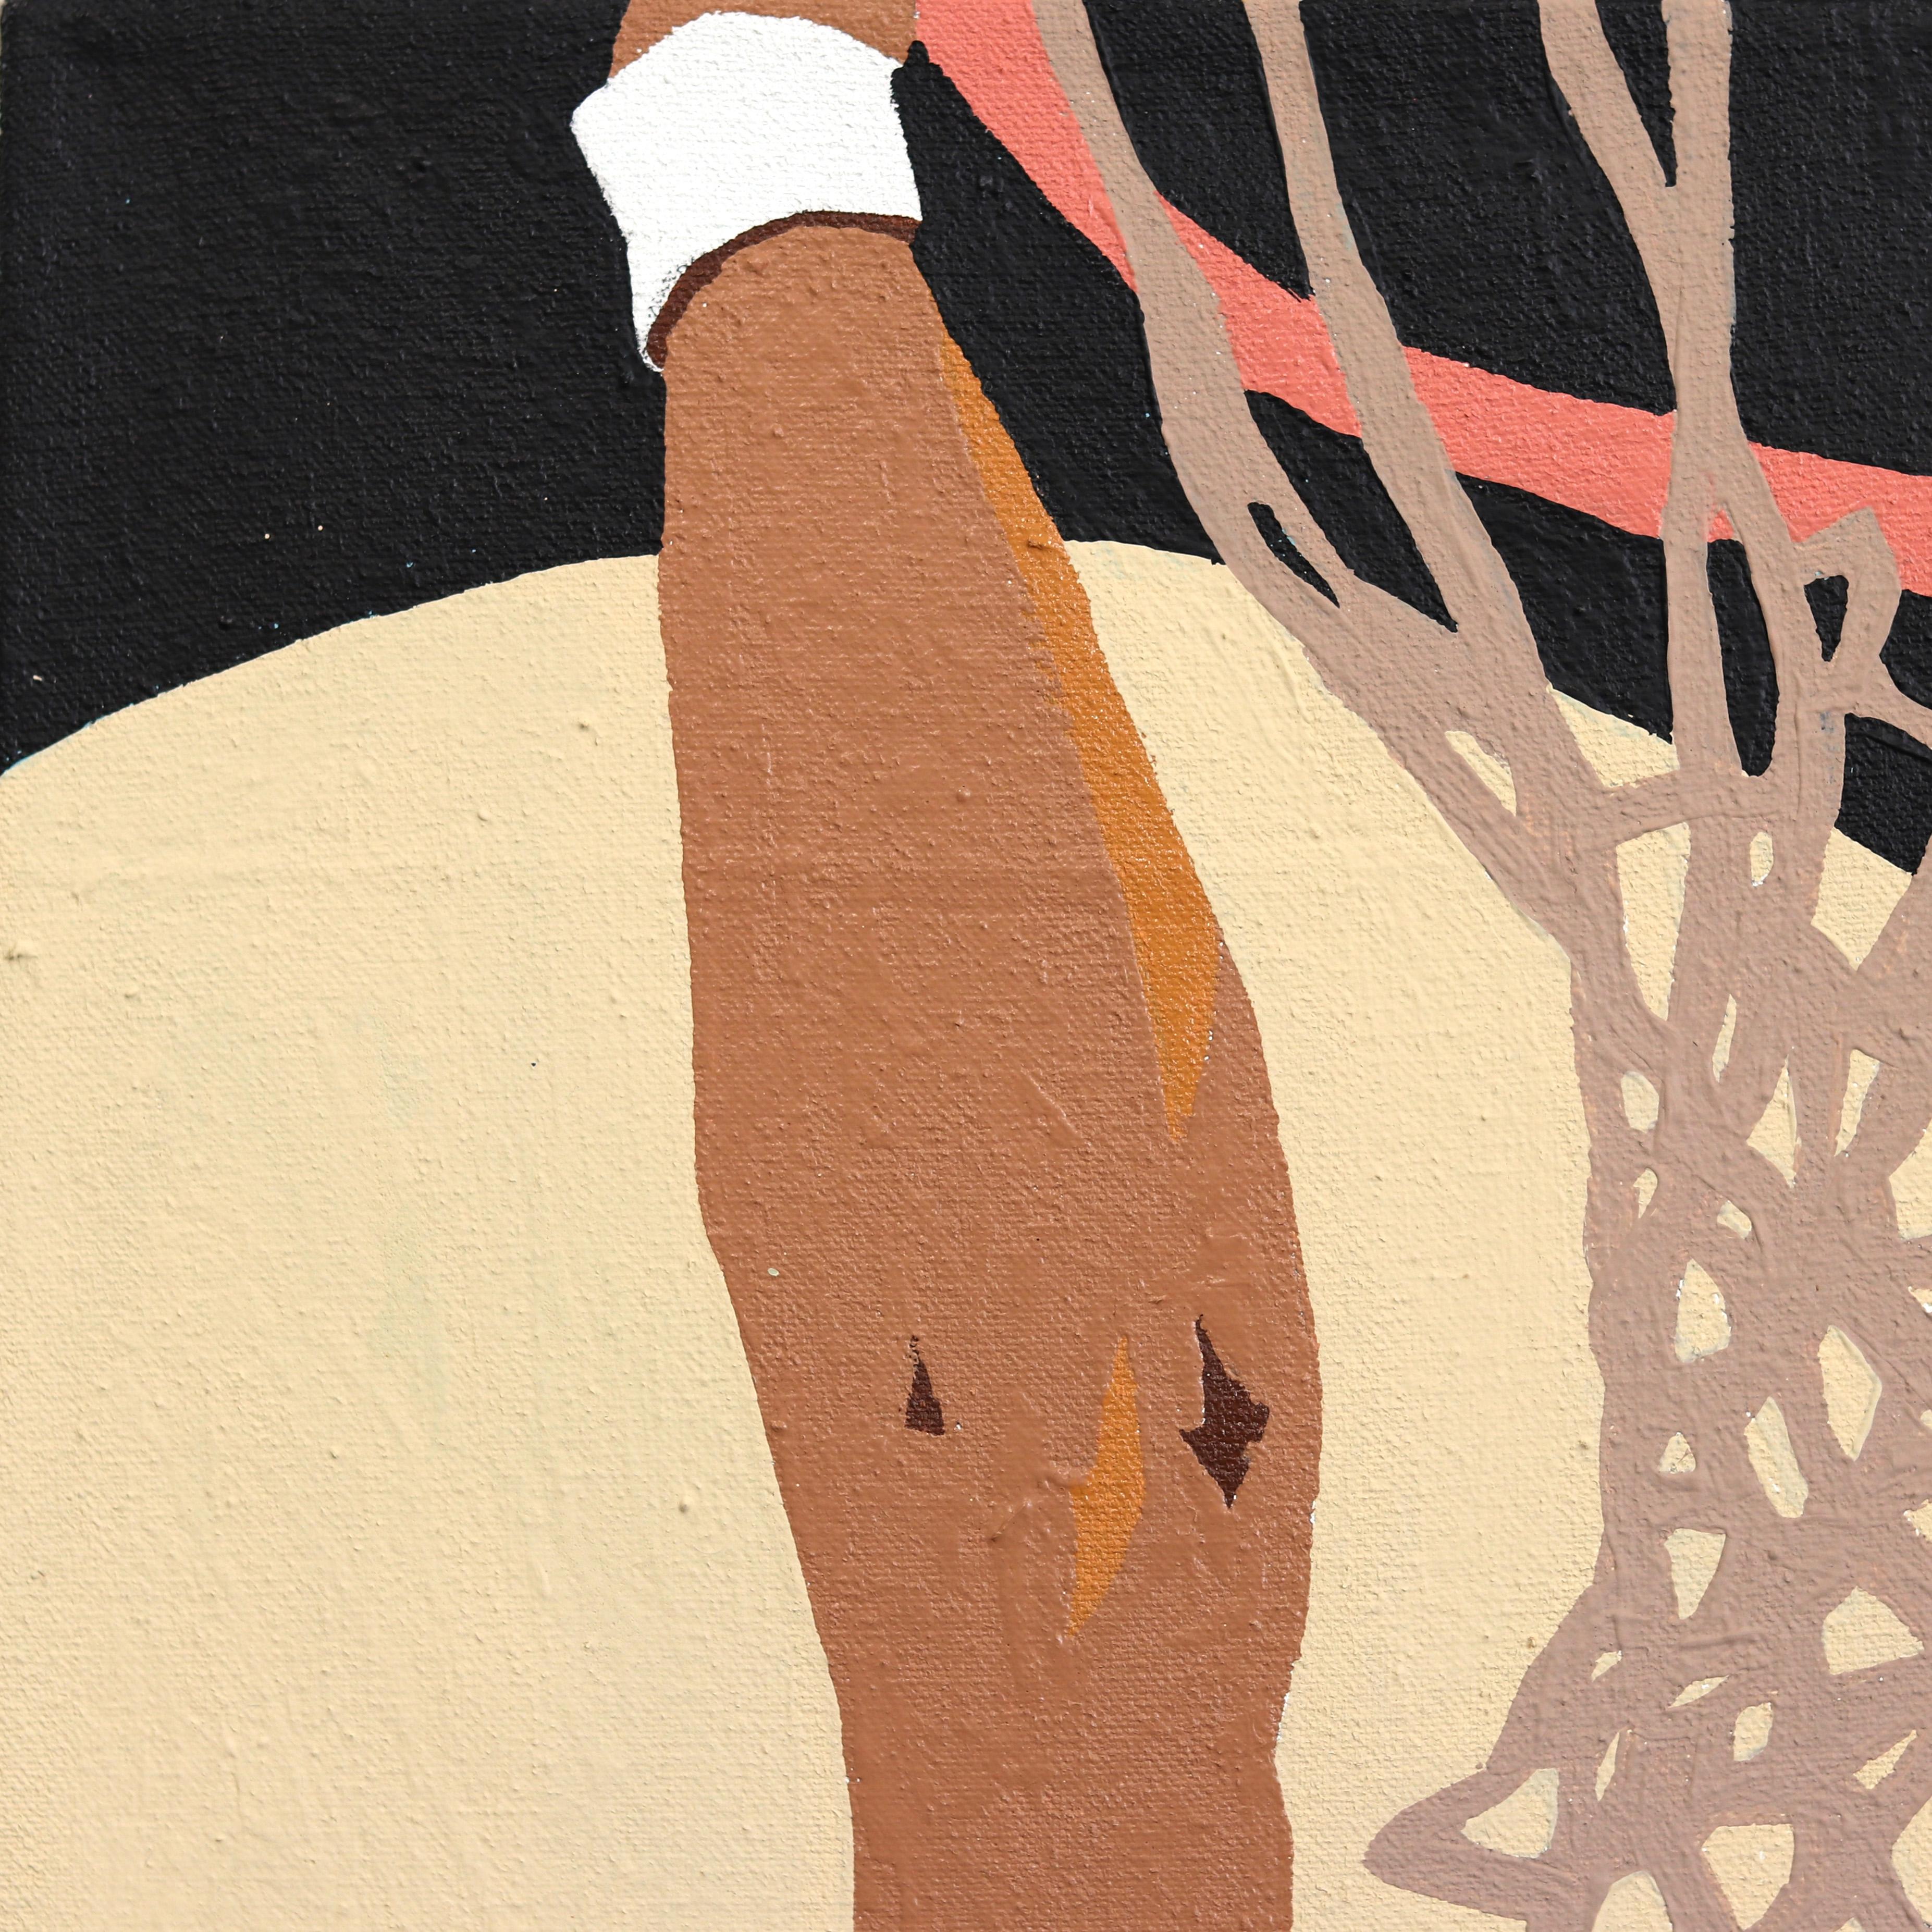 Danny Brown ist ein amerikanischer Urban Artist der ersten Generation, der in Los Angeles geboren wurde. Seine Eltern zogen mit ihrer Familie aus Oaxaca, Mexiko, in die Vereinigten Staaten, um dort nach Möglichkeiten zu suchen. Die Kunstwerke von